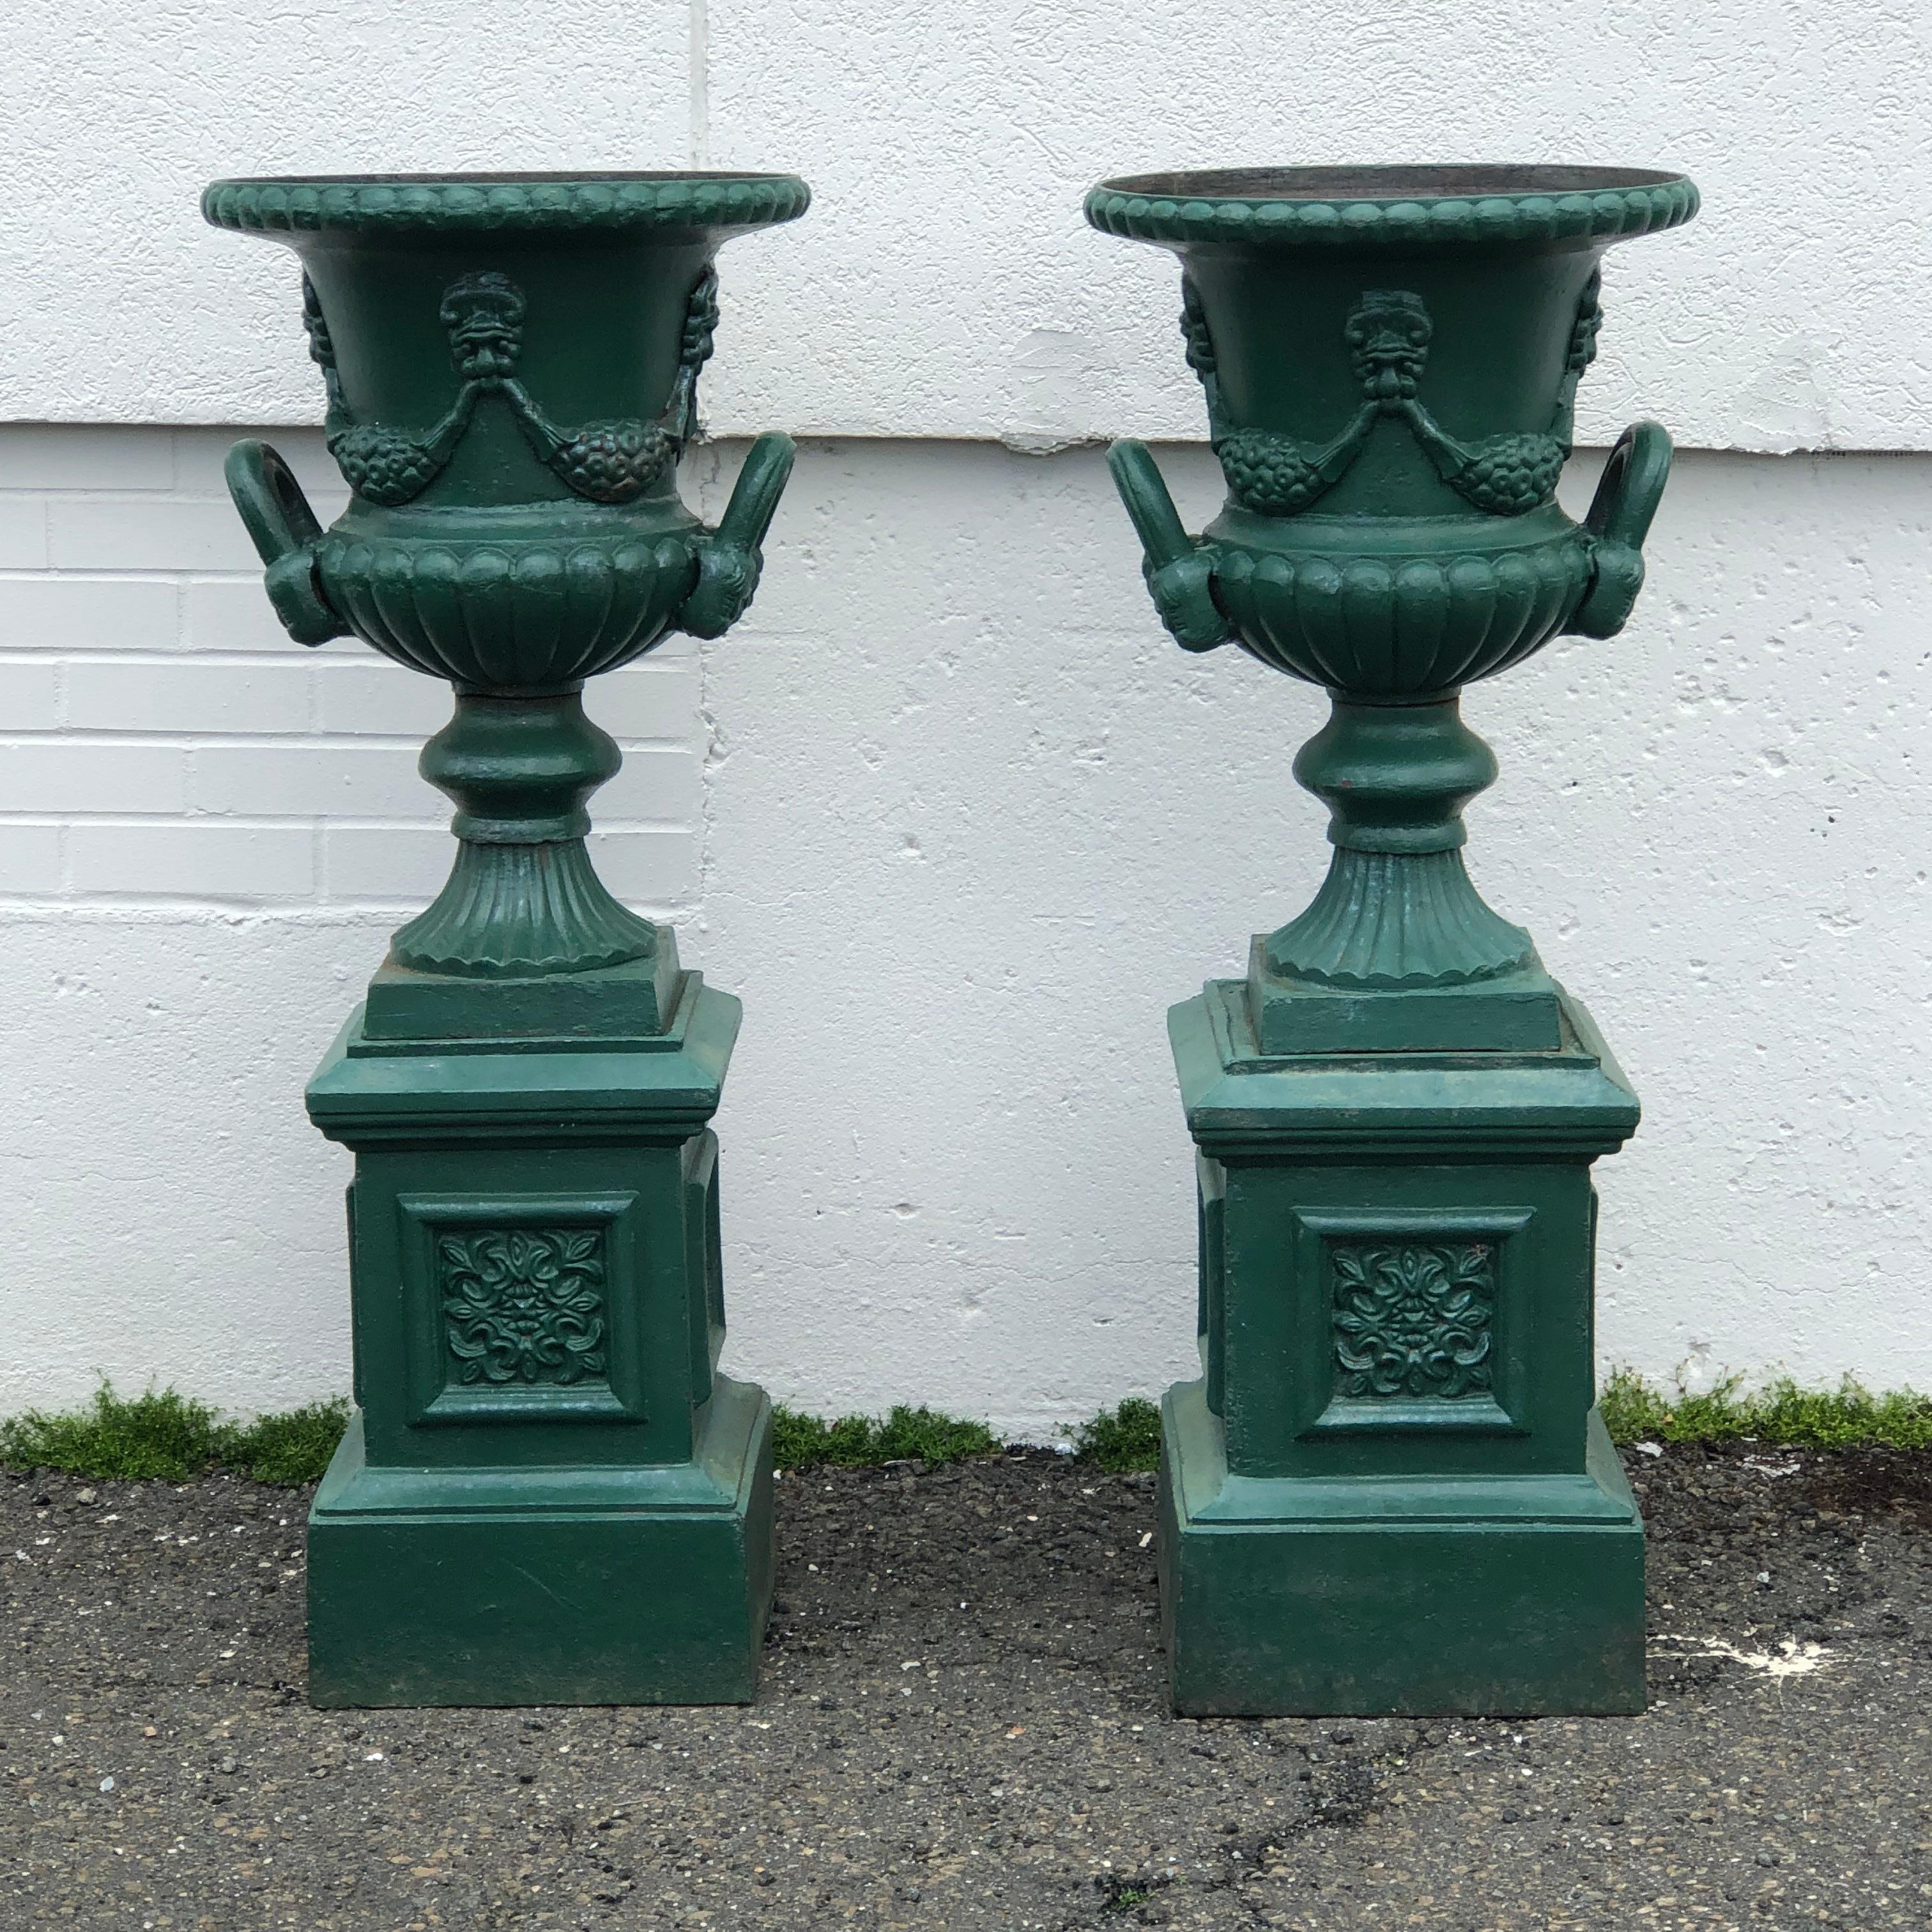 19th Century Pair of Antique Garden Urns with Original Plinths